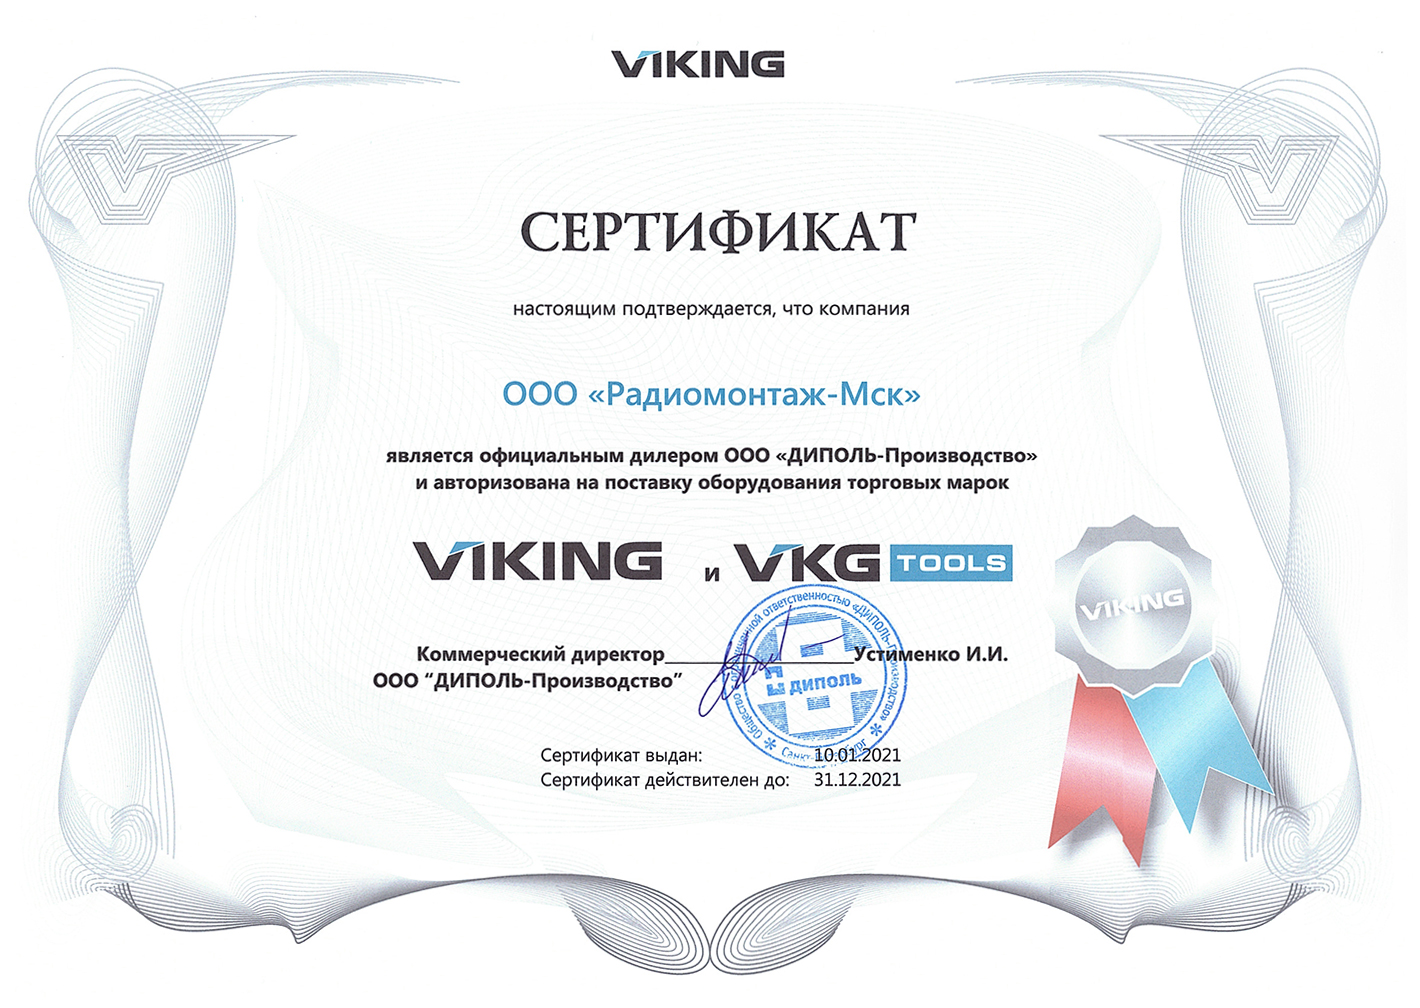 Сертификат официального дилера VIKING и VKG TOOLS 2021 год.